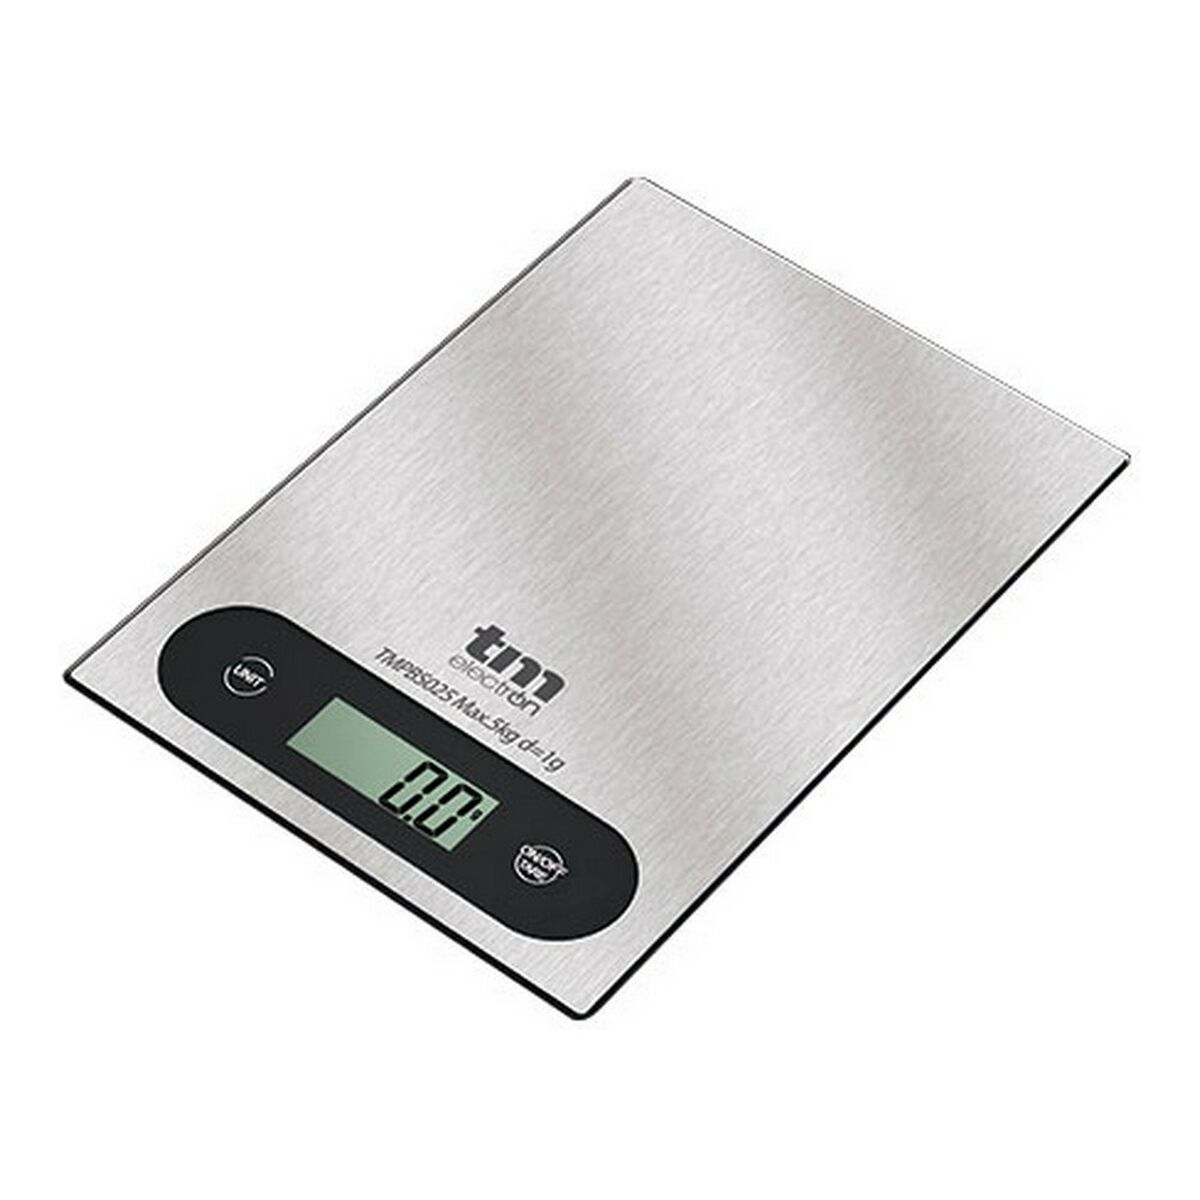 balance de cuisine TM Electron Gris 5 kg